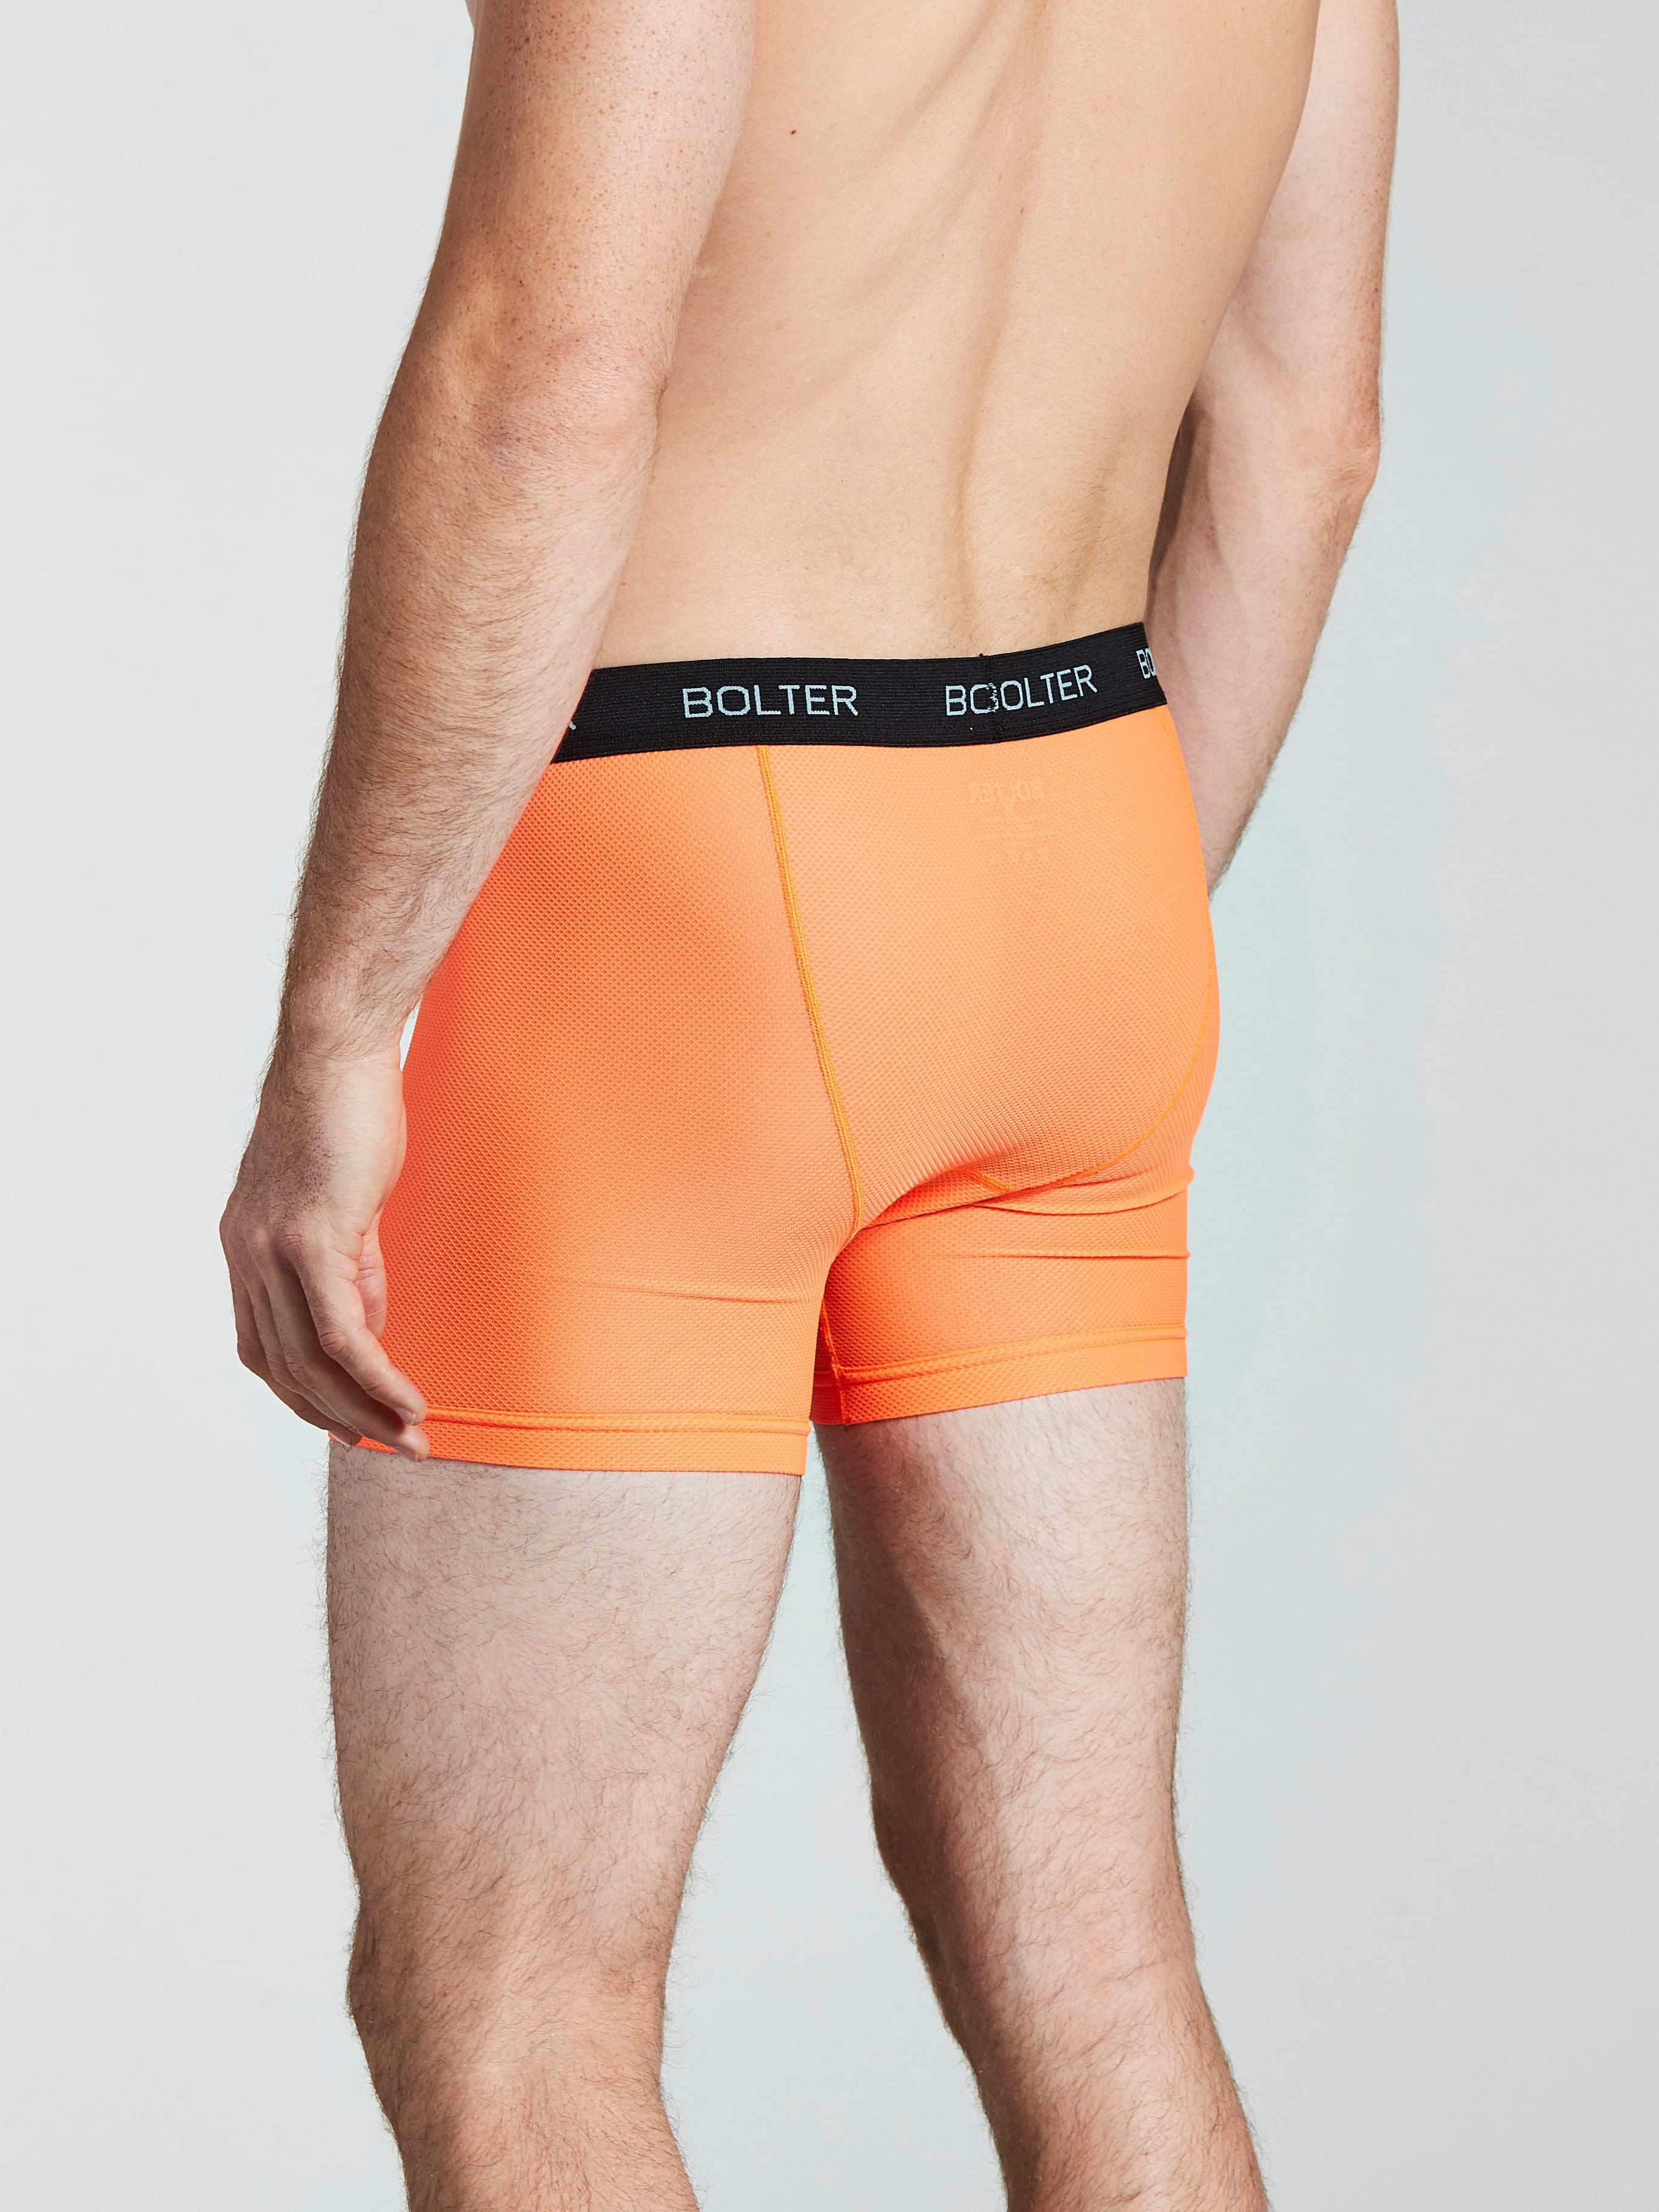 Stance Mens Whipple Bottom Wholester Boxer Briefs - Orange - XL